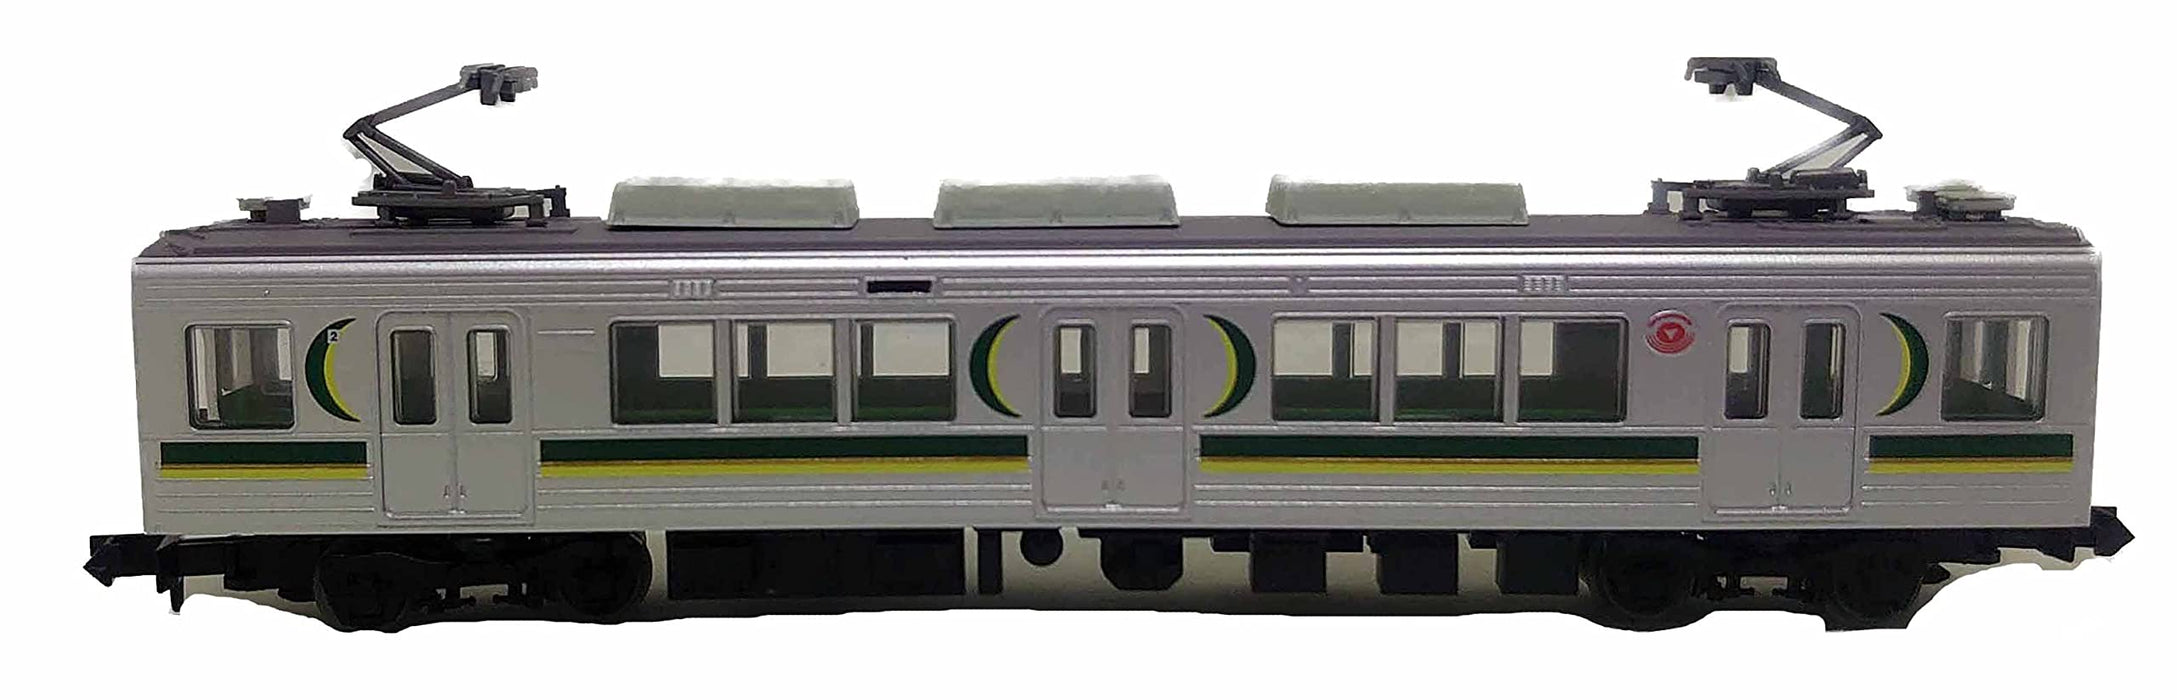 Tomytec Coffret de 3 wagons Collection ferroviaire Séries 1000 et 1500 Tokyu Corporation